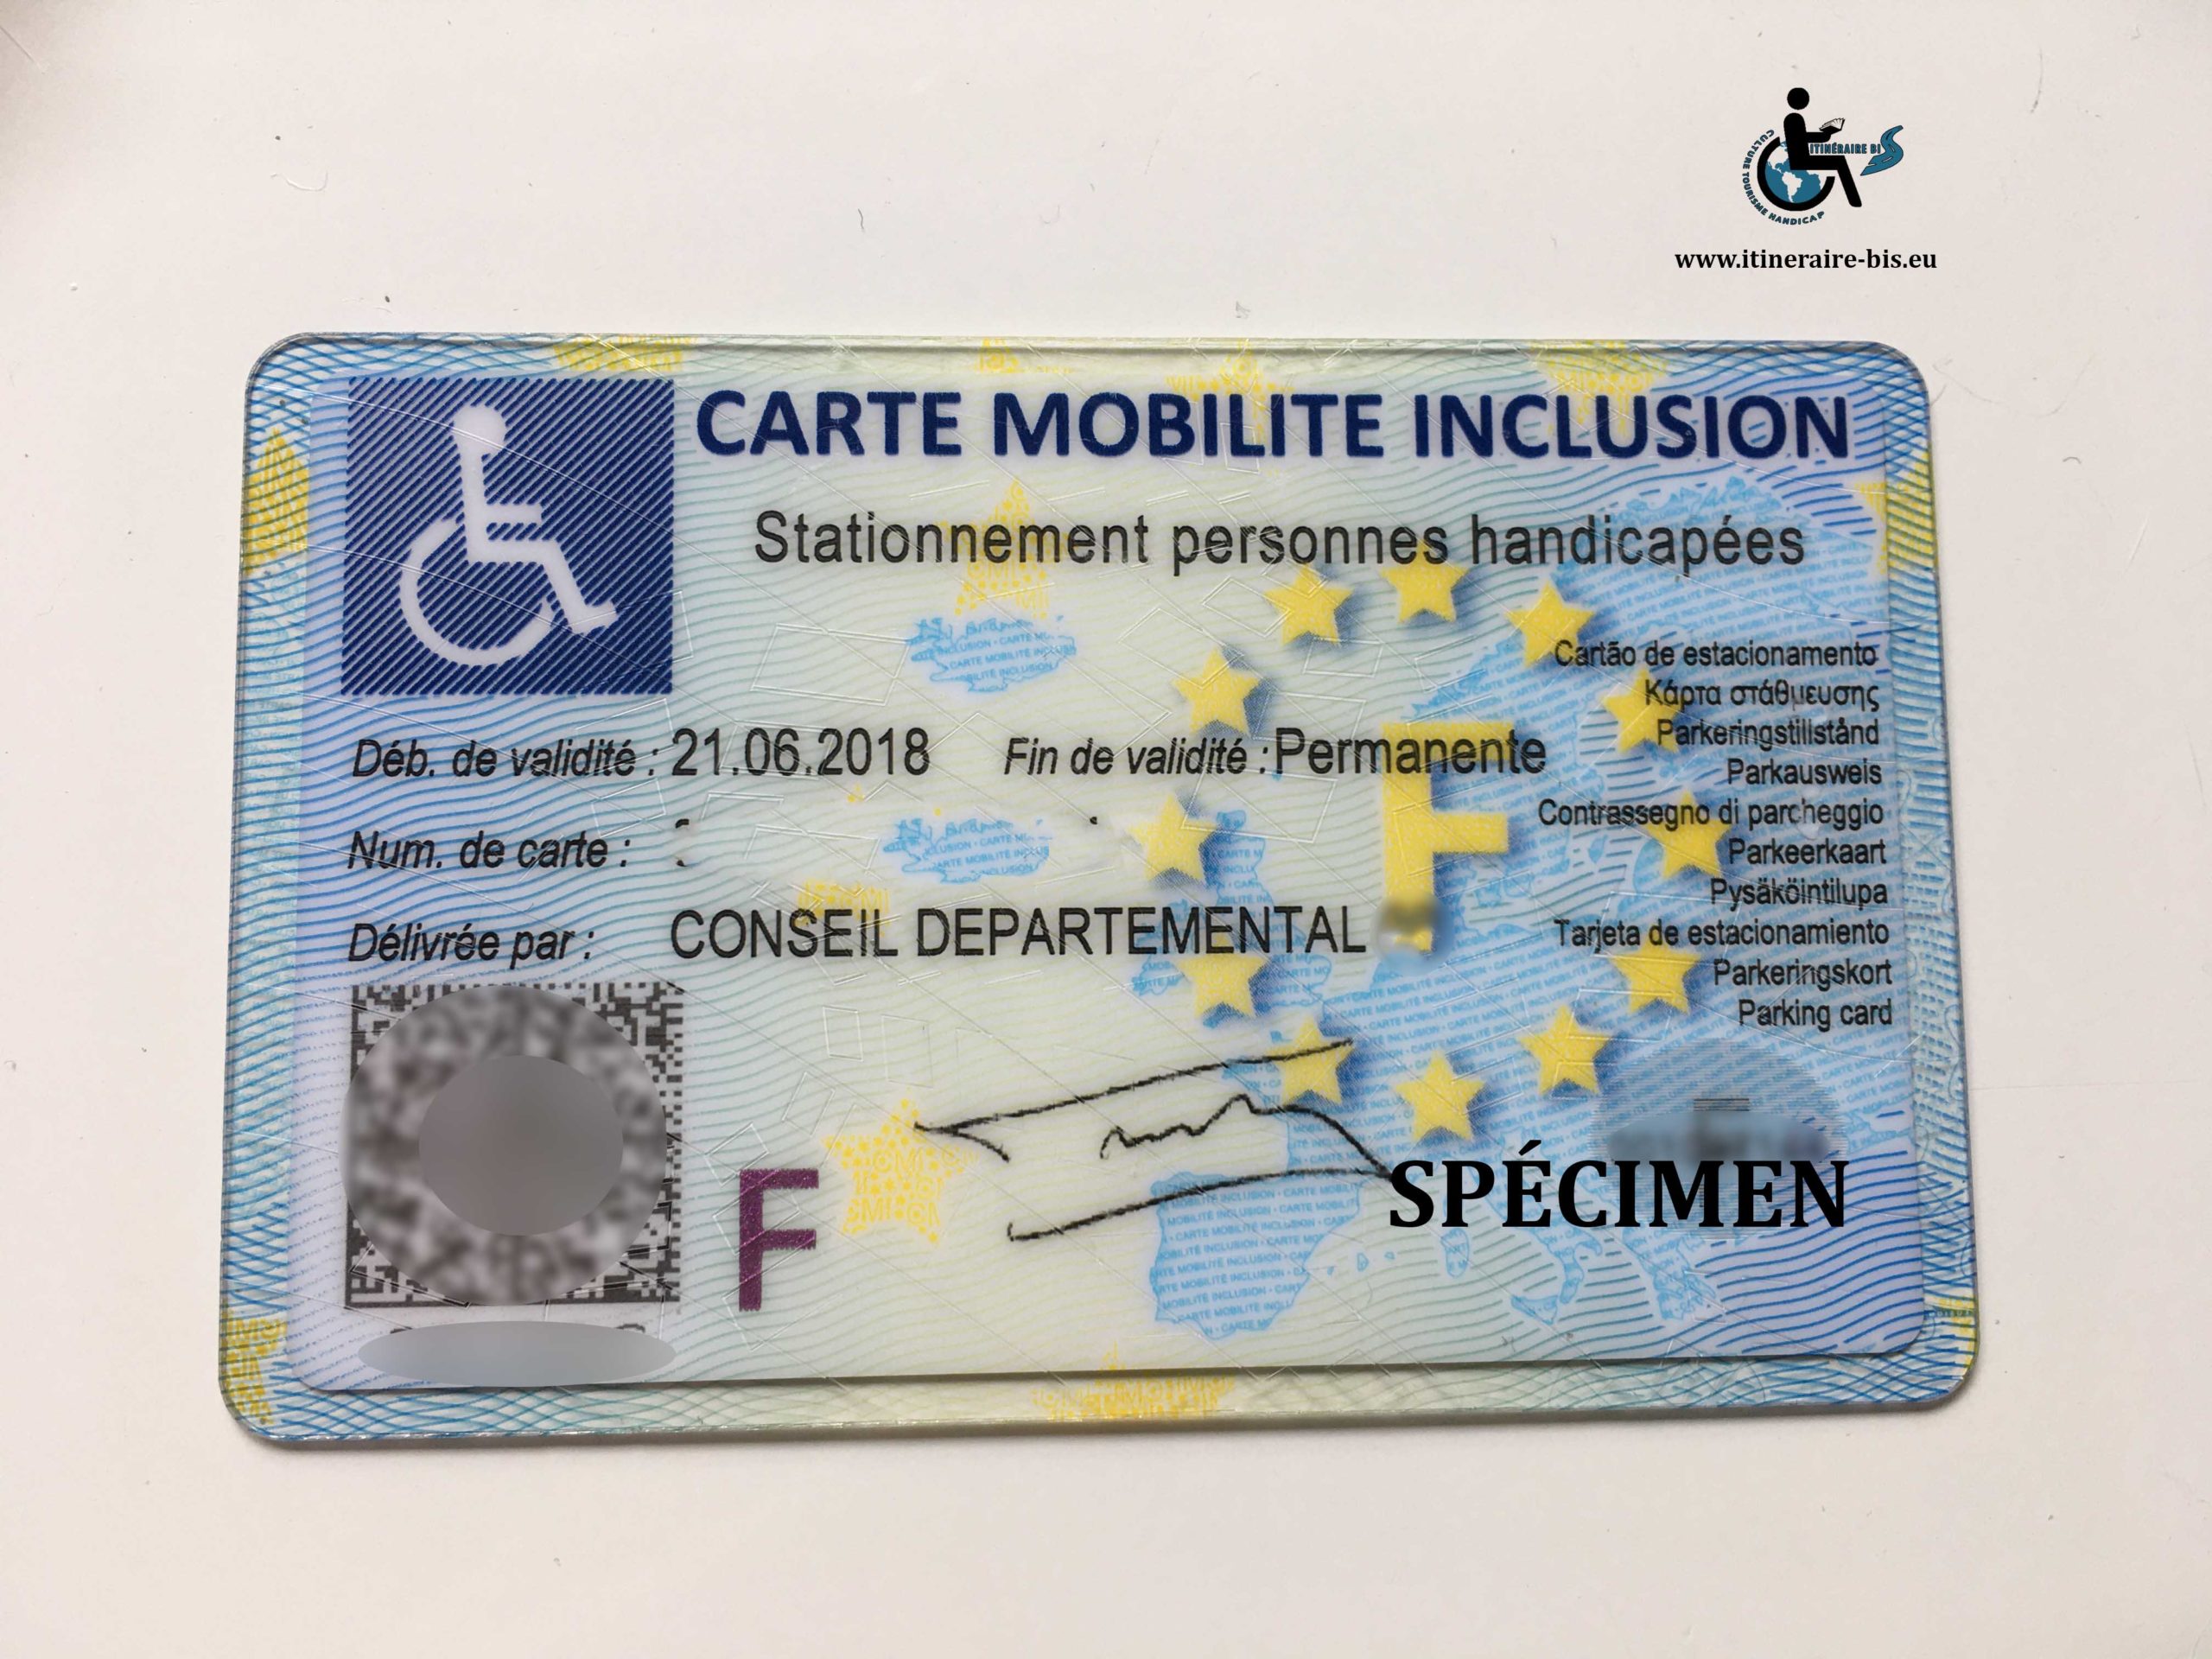 Carte de stationnement pour personne handicapée dans l'Union Européenne